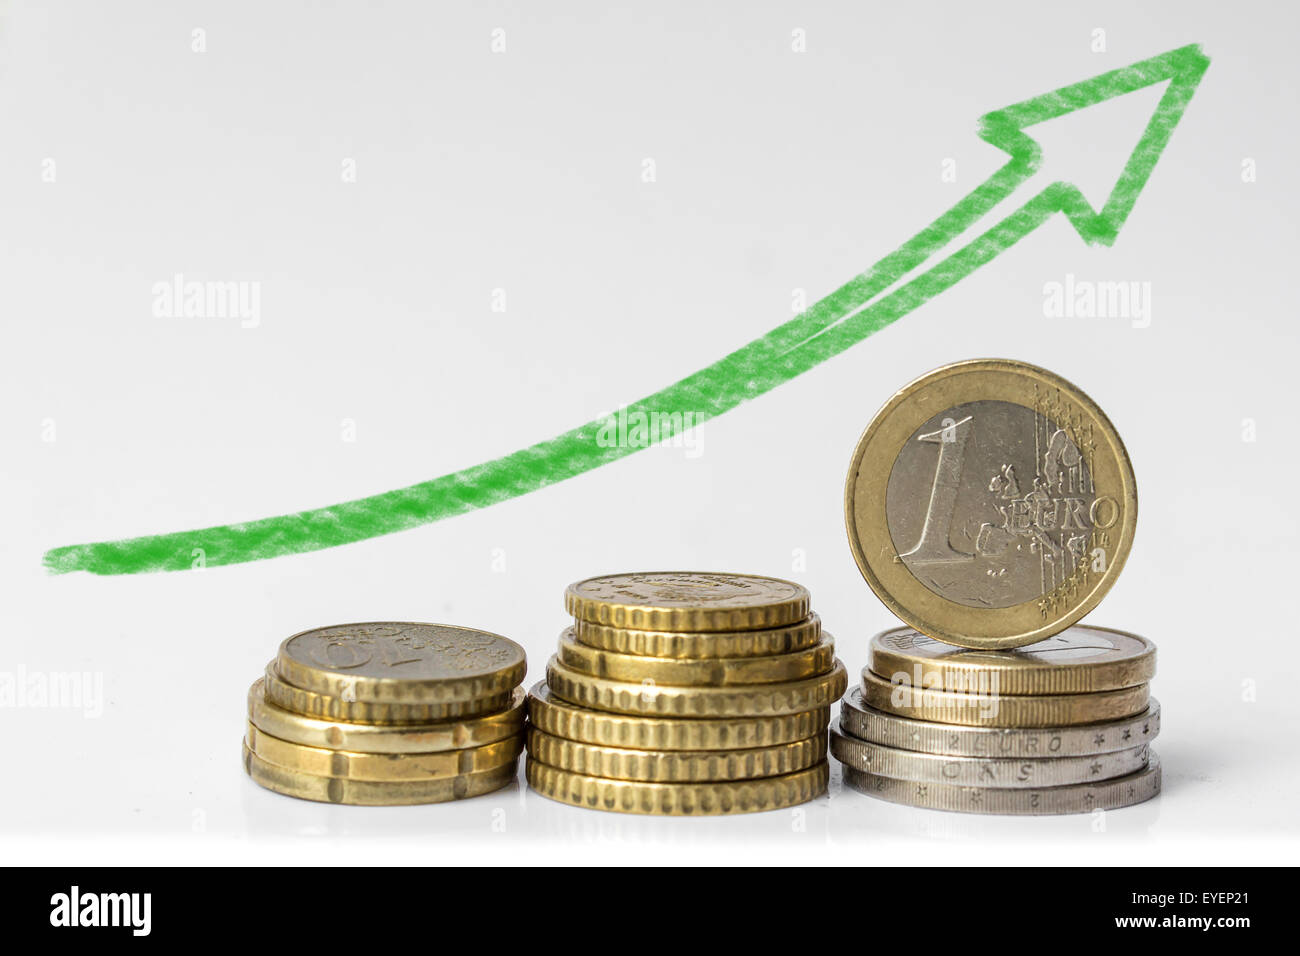 Stapel von Euro-Münzen auf weißem Hintergrund - europäische Währung Stockfoto